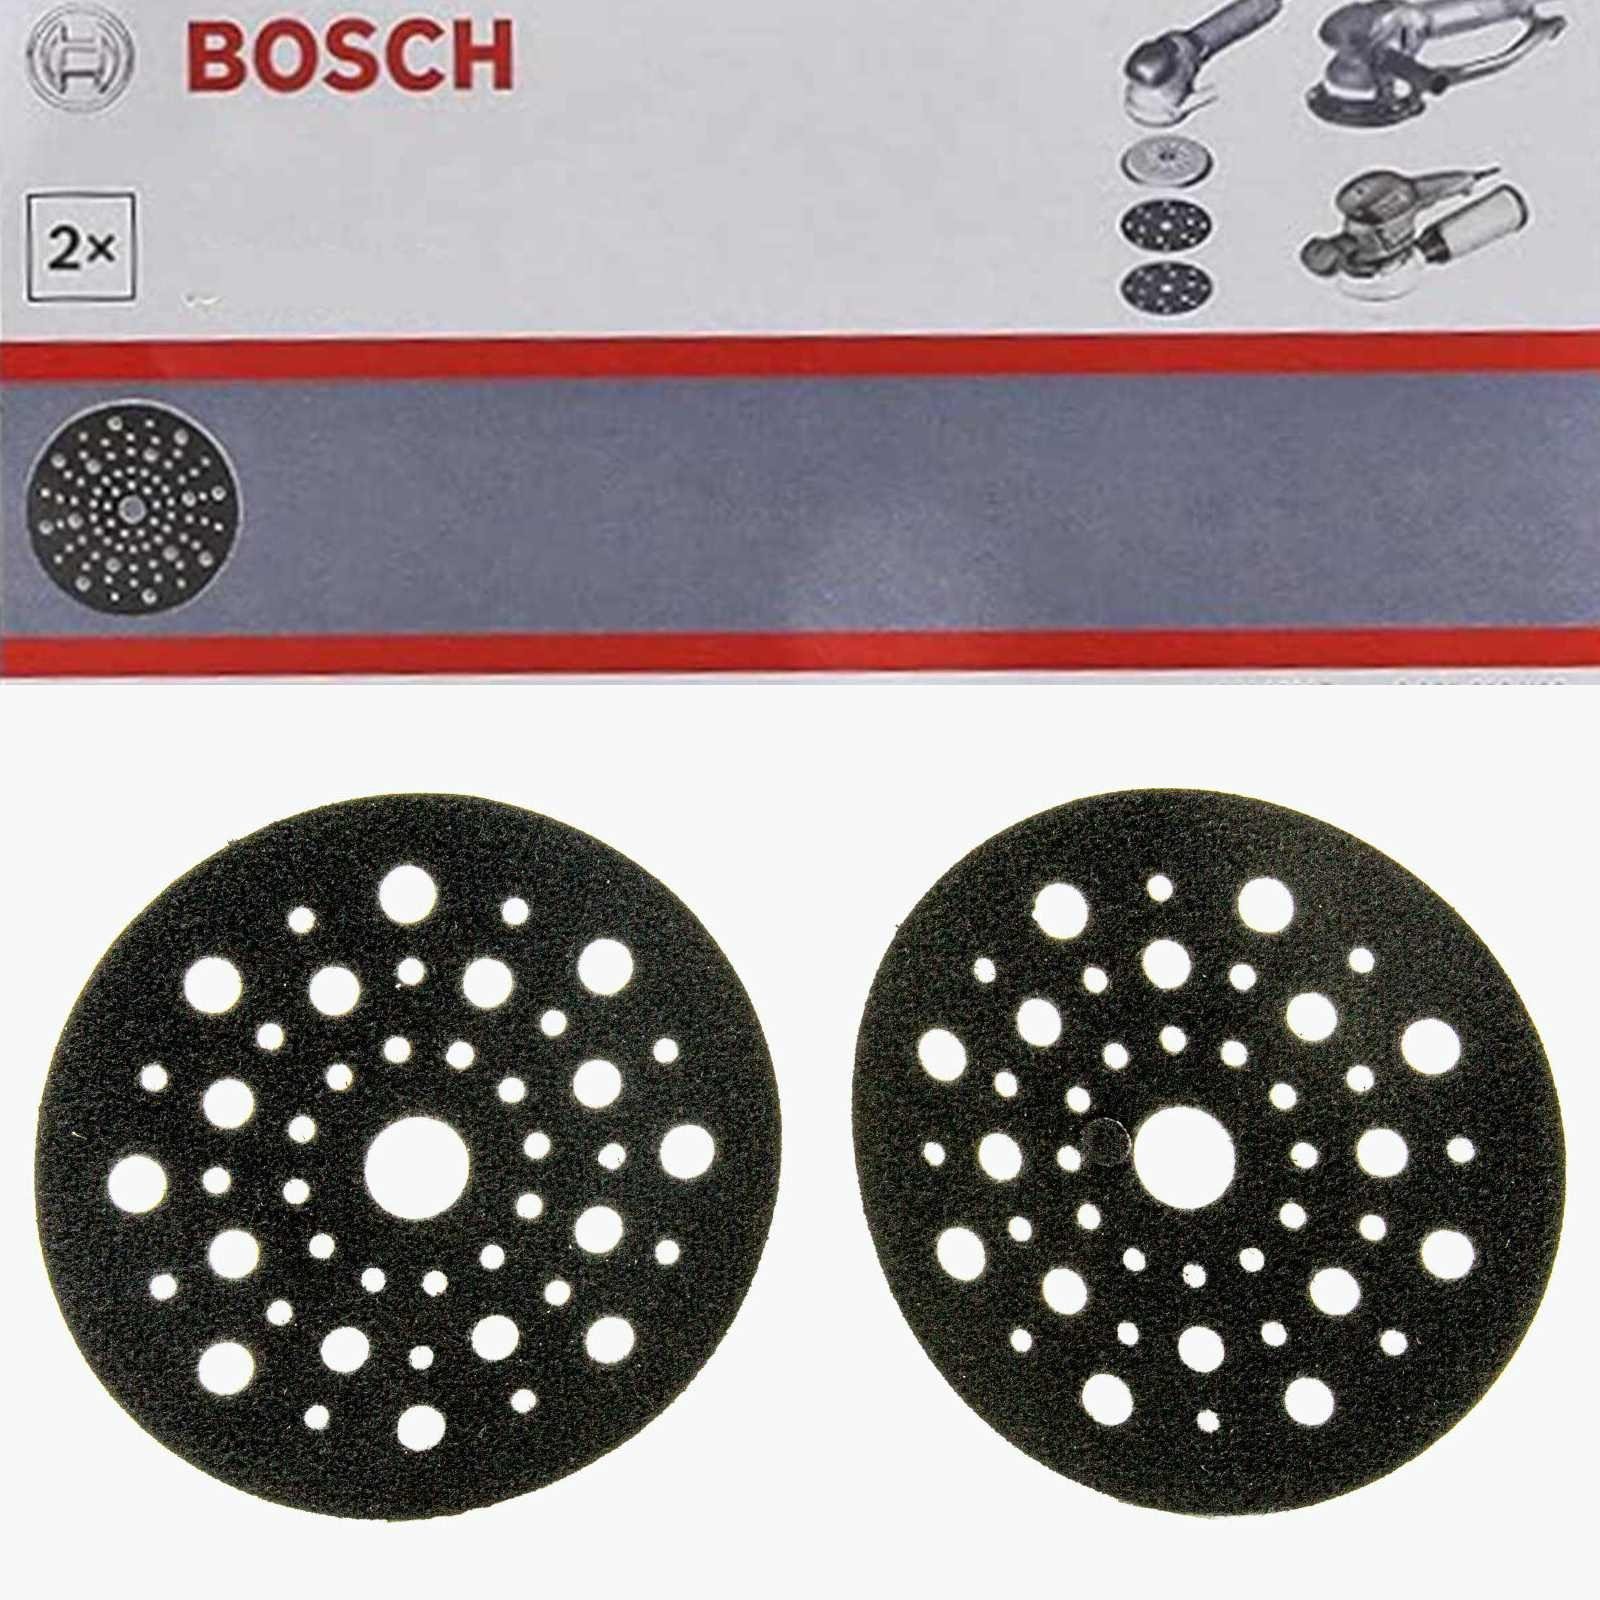 Professional Exzenters Bosch mm, Schleiftellerschoner Bohrfutter BOSCH (125 2 Stück